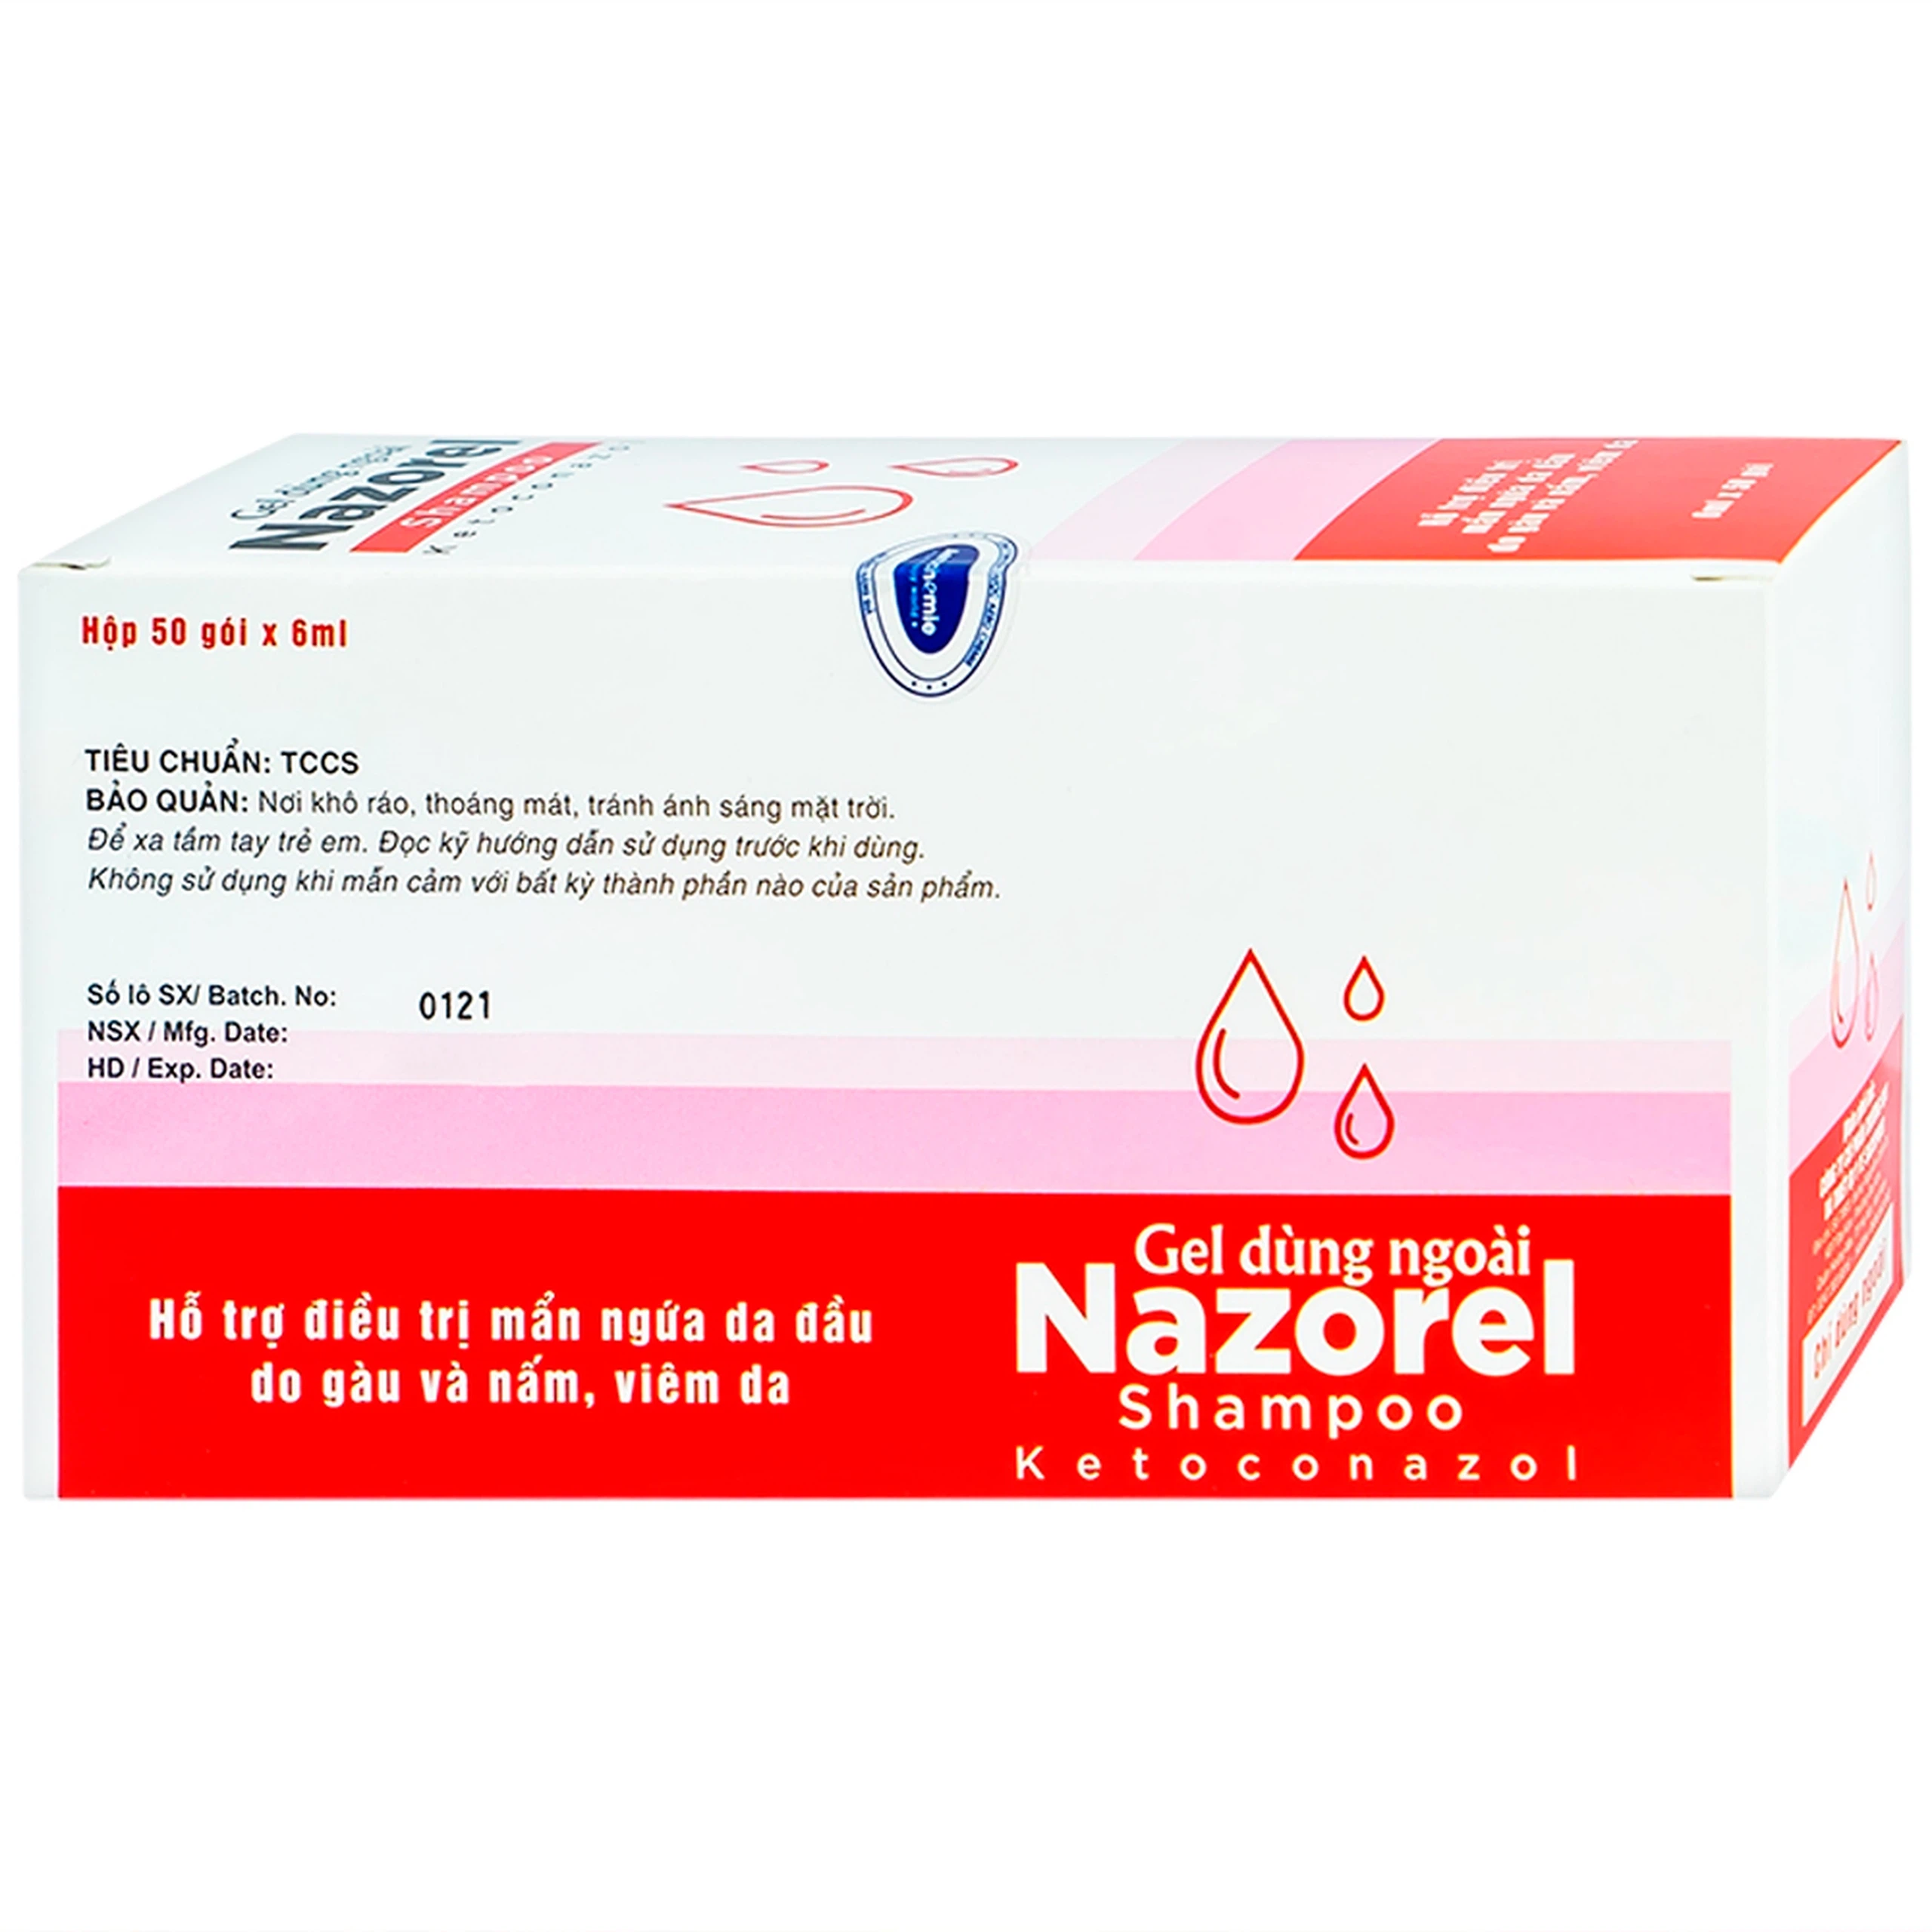 Gel dùng ngoài Nazorel Shampoo Ketoconazol hỗ trợ điều trị mẩn ngứa da đầu do gàu và nấm, viêm da (50 gói x 6ml)